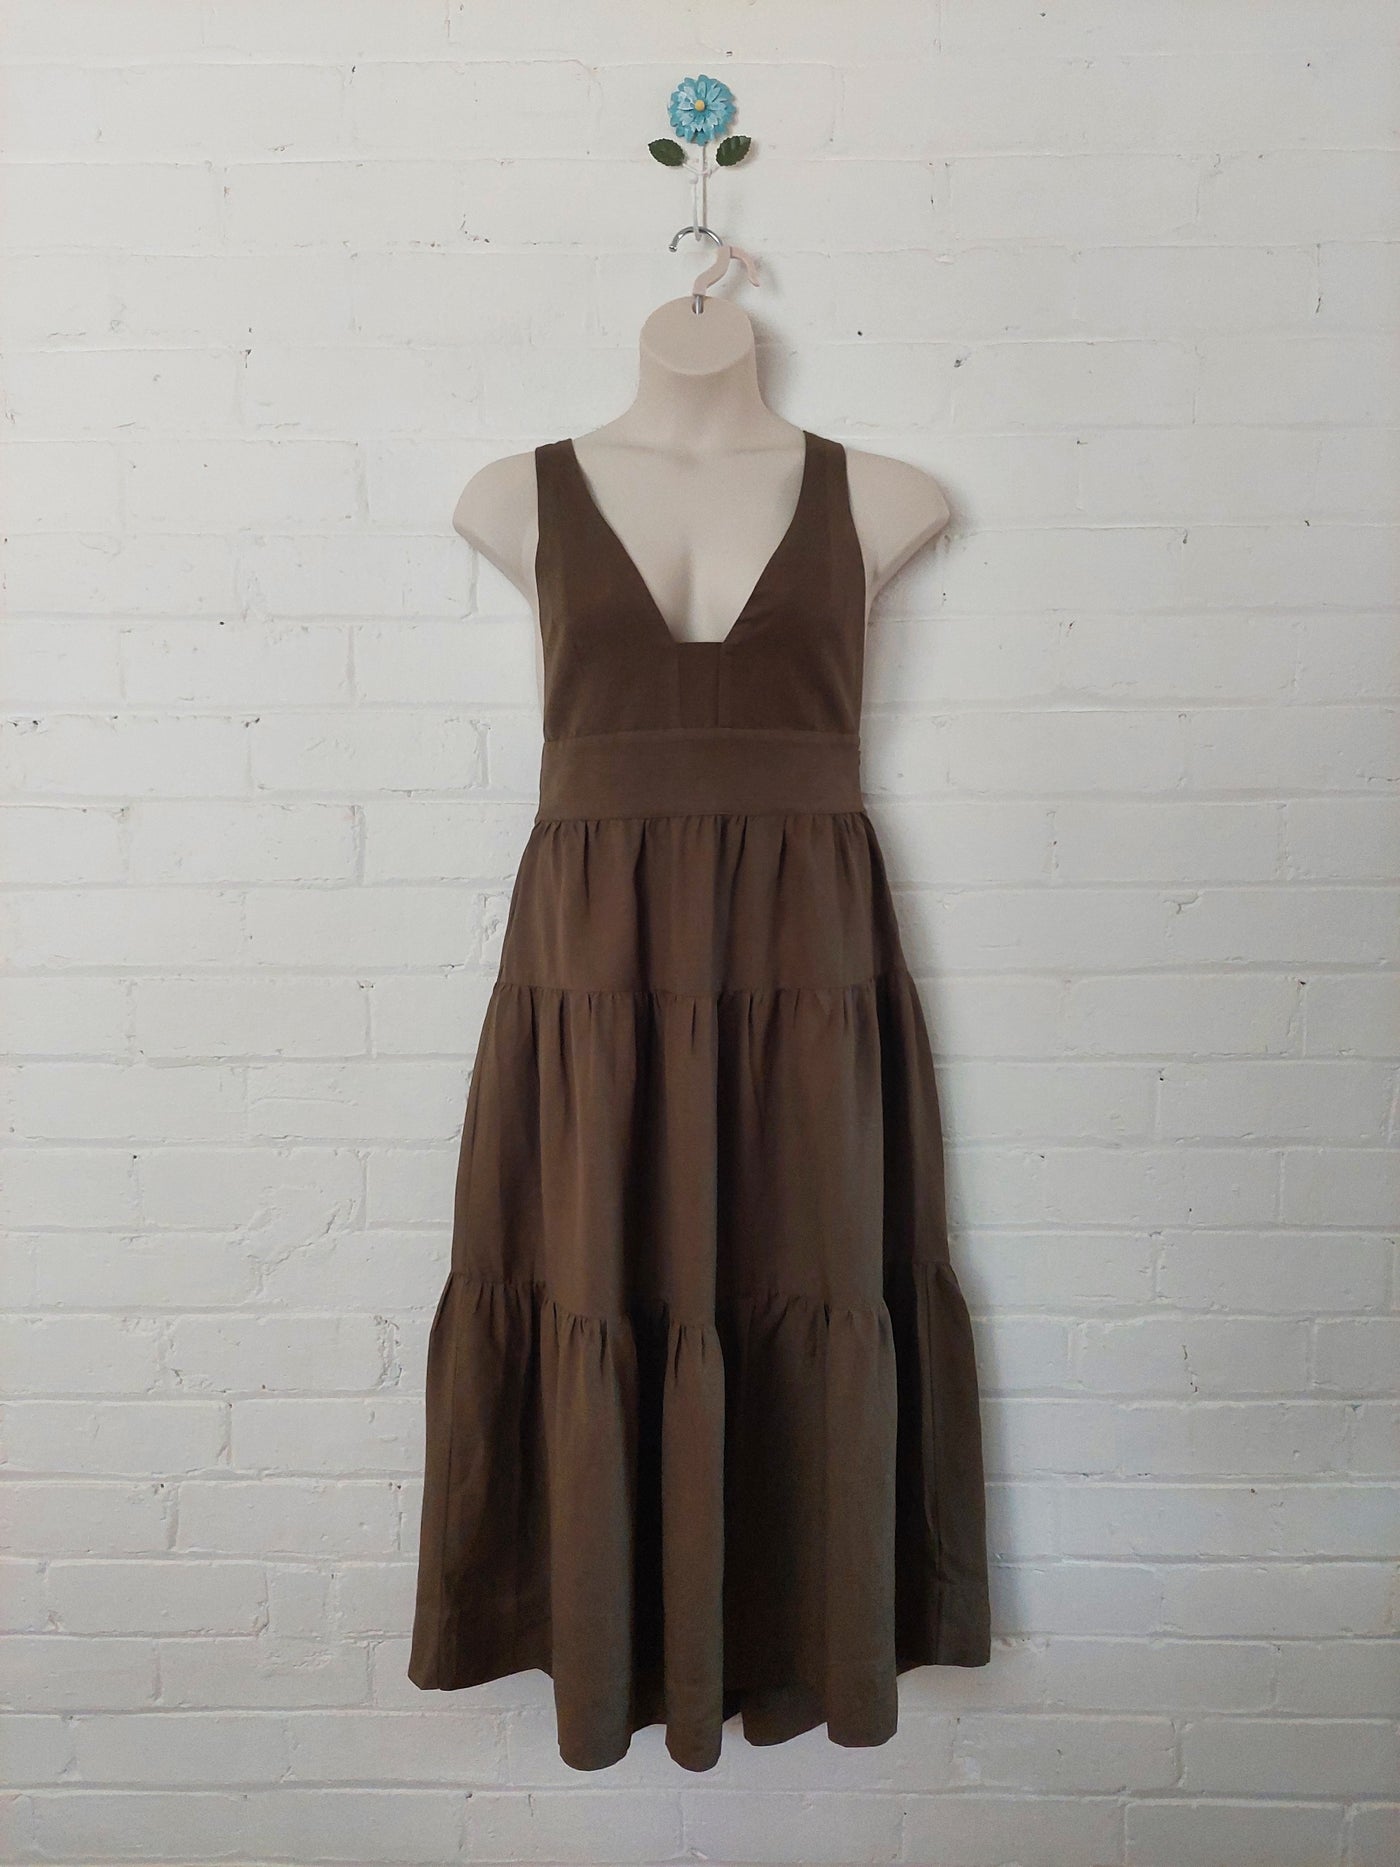 Shona Joy Juliana Linen Plunged Cross Back Midi Dress in Forest Green, Size 14